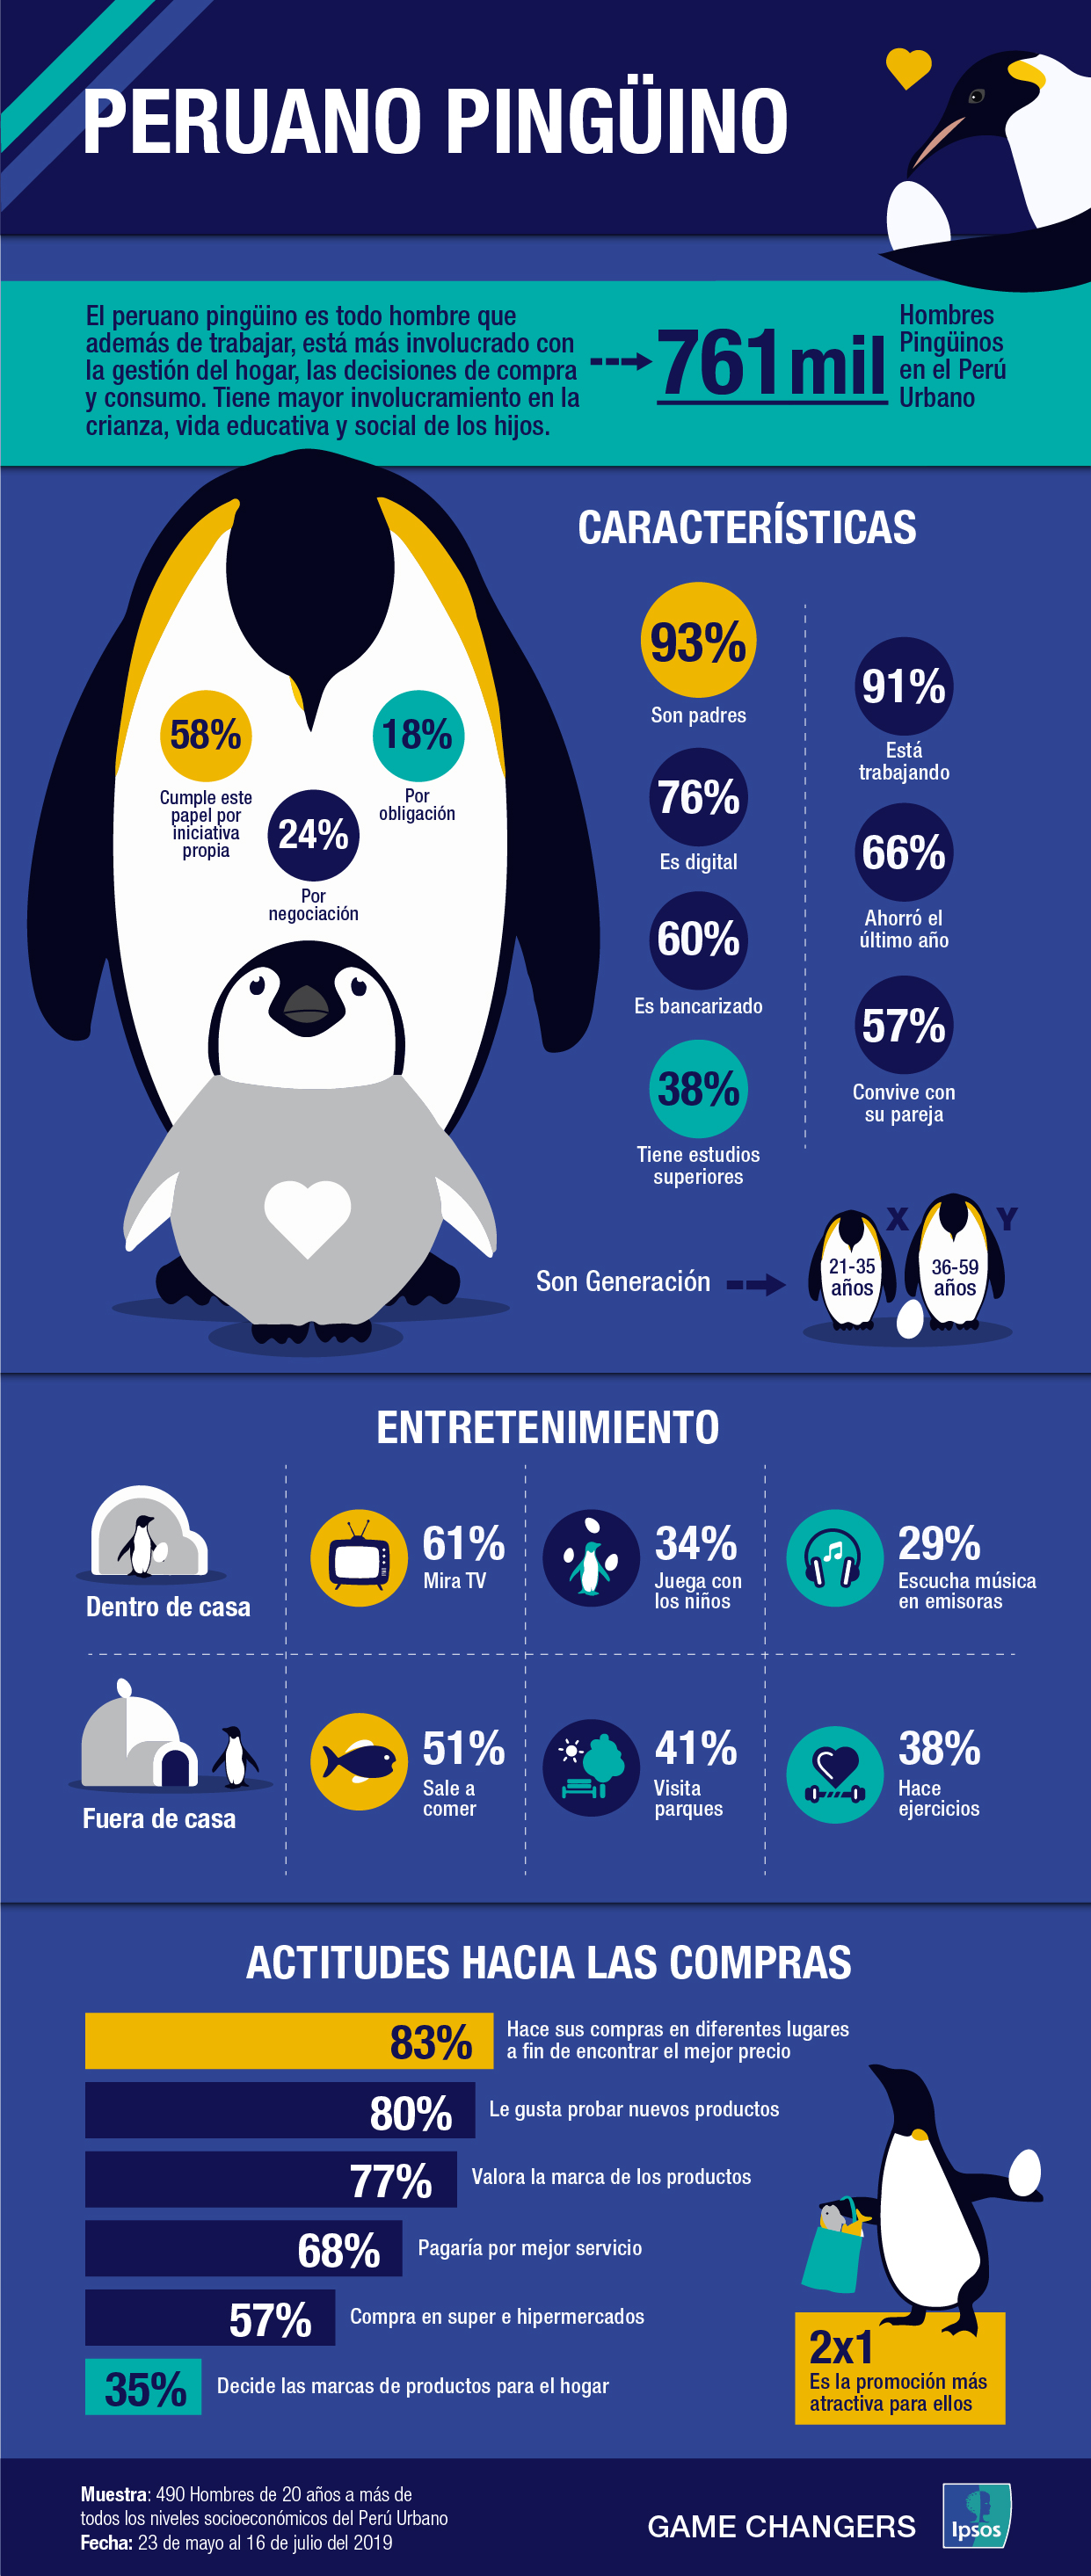 Peruano pinguino